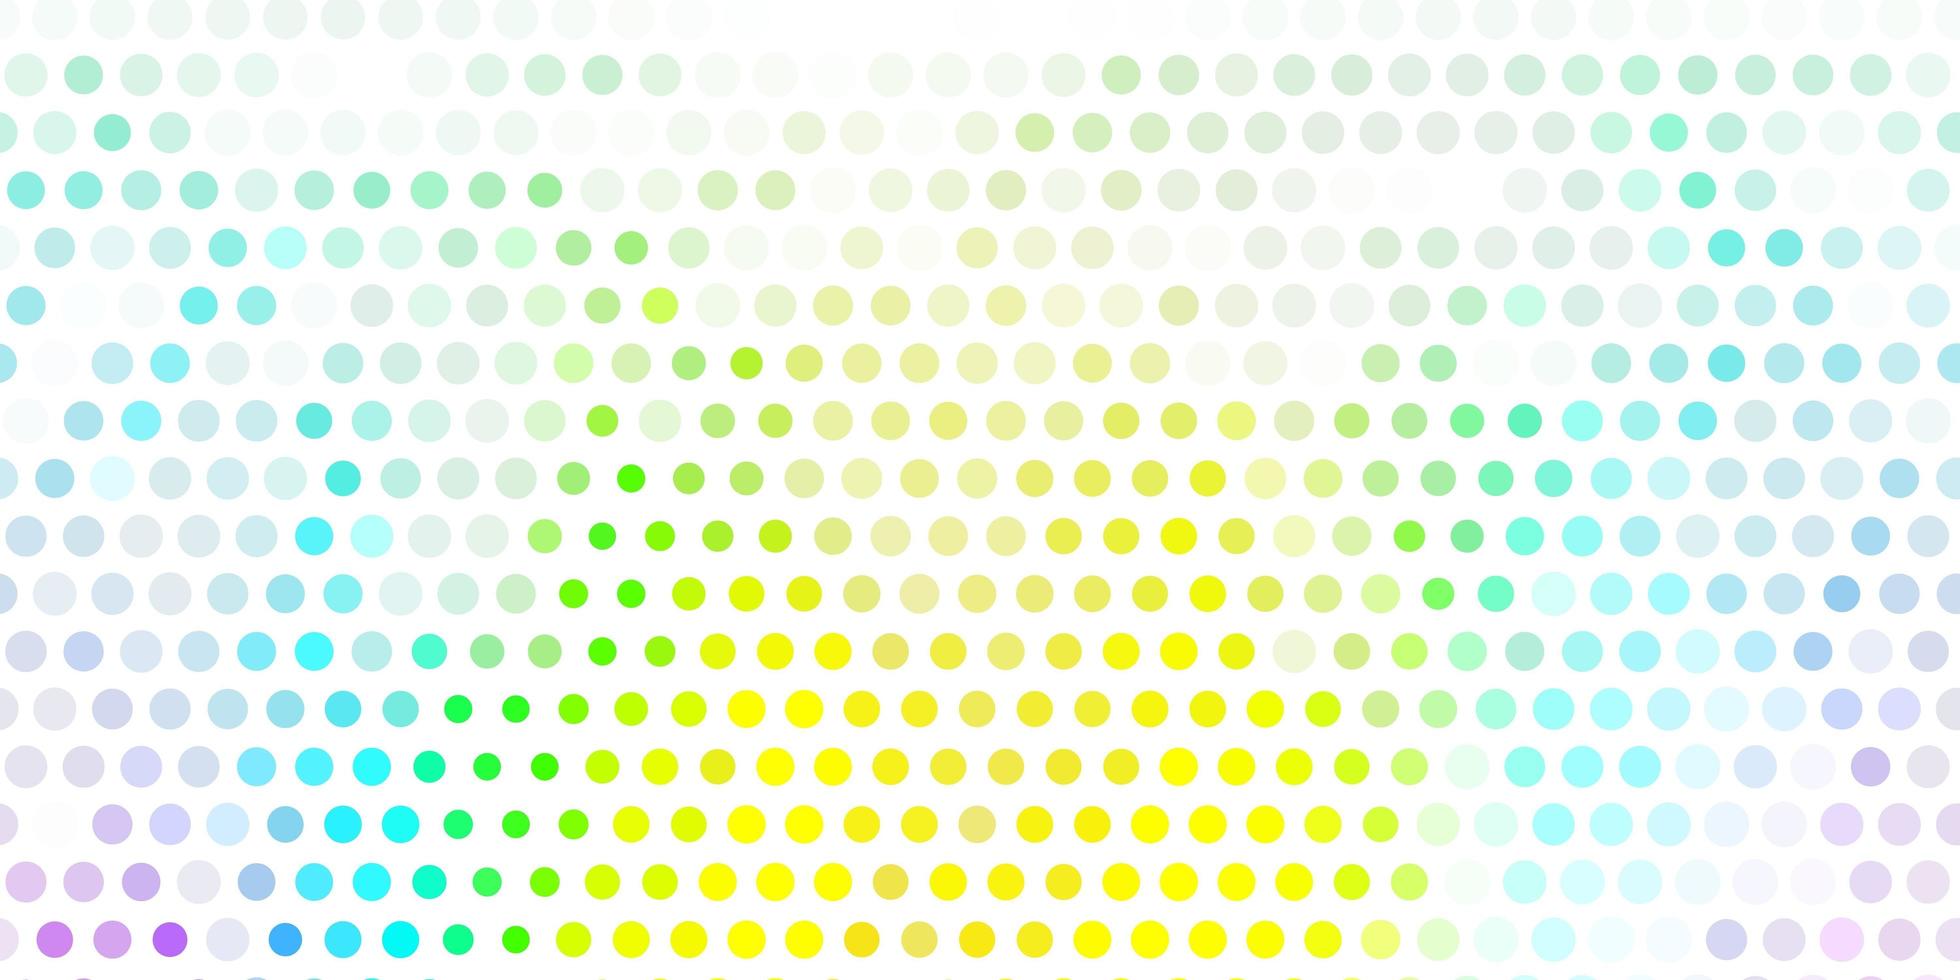 luz padrão multicolorido de vetor com esferas.